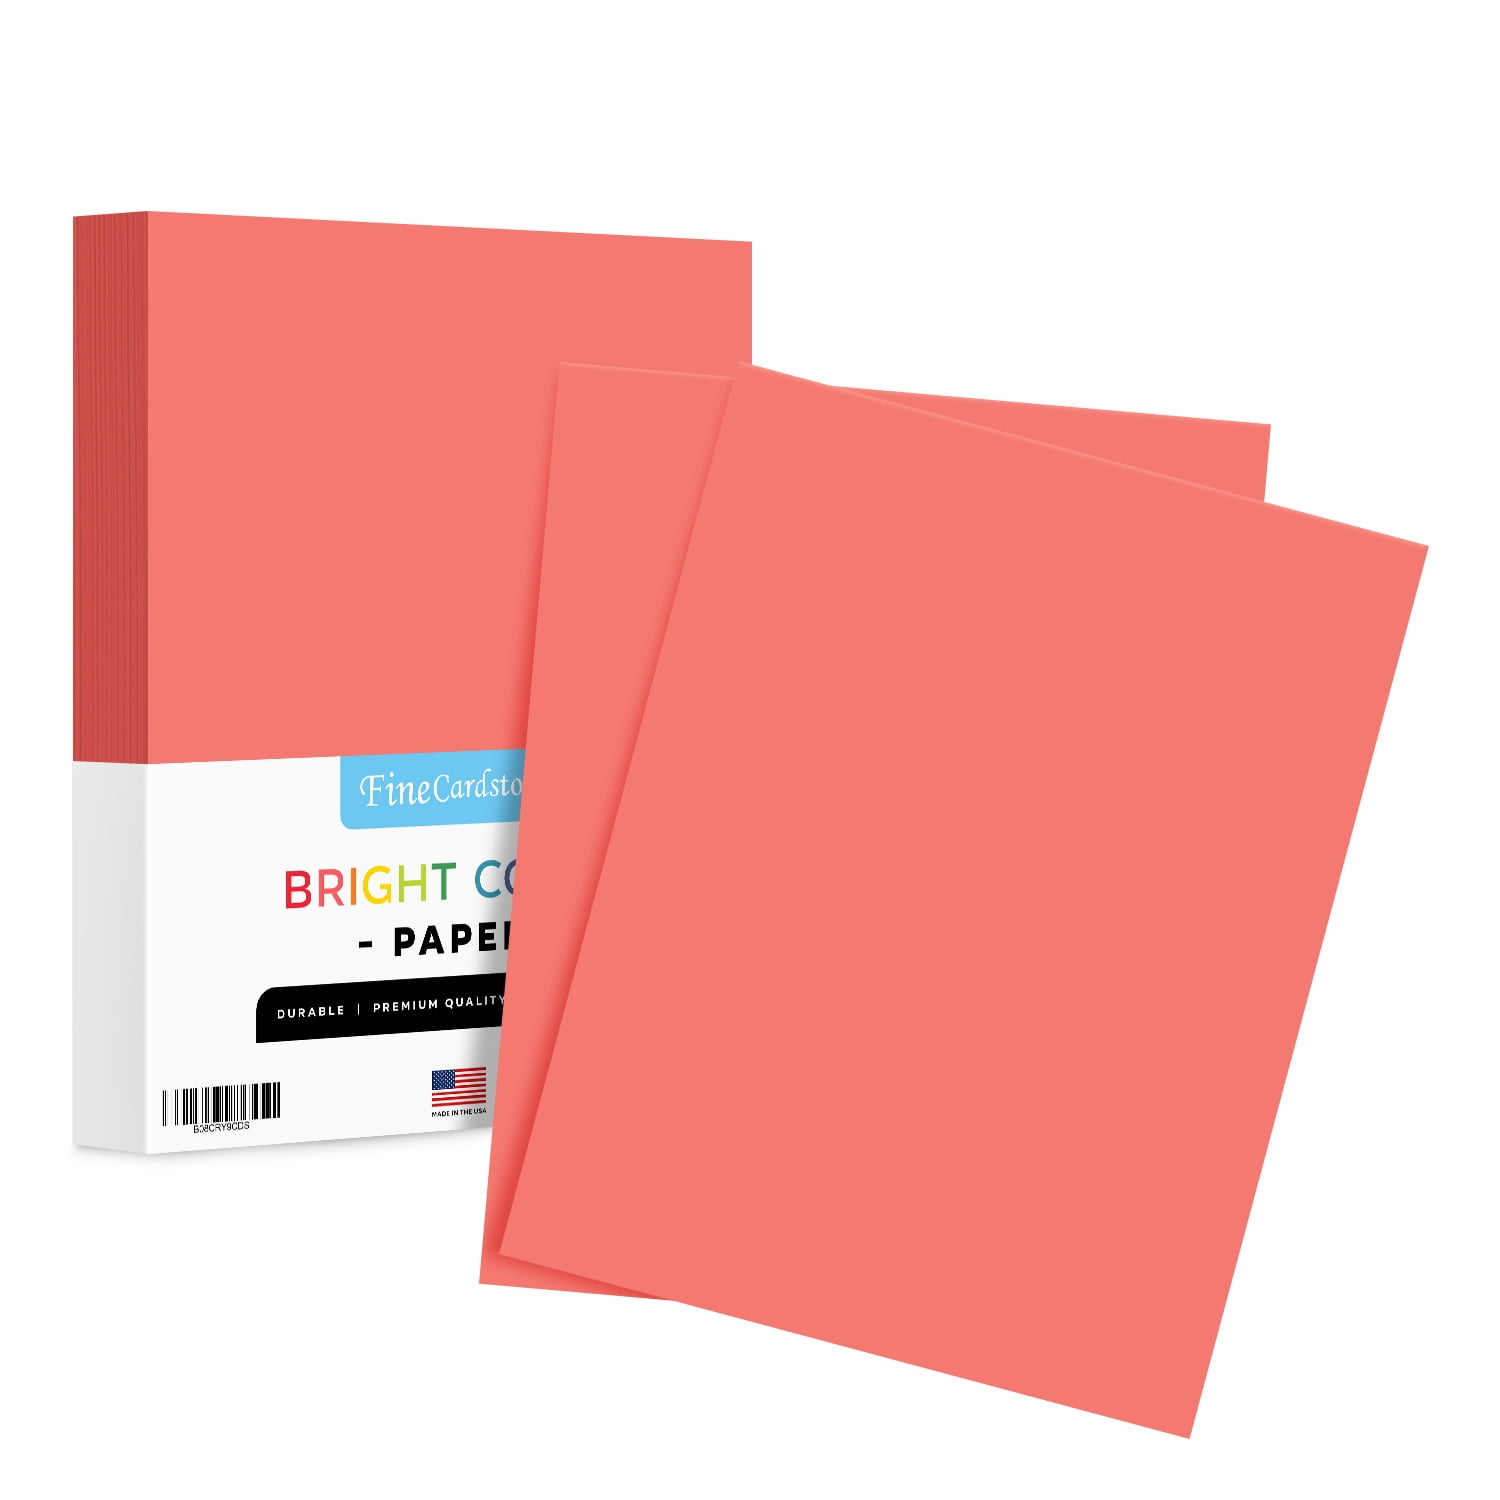  Exact Color Copy Paper, 8-1/2 x 11 Inches, 20 lb